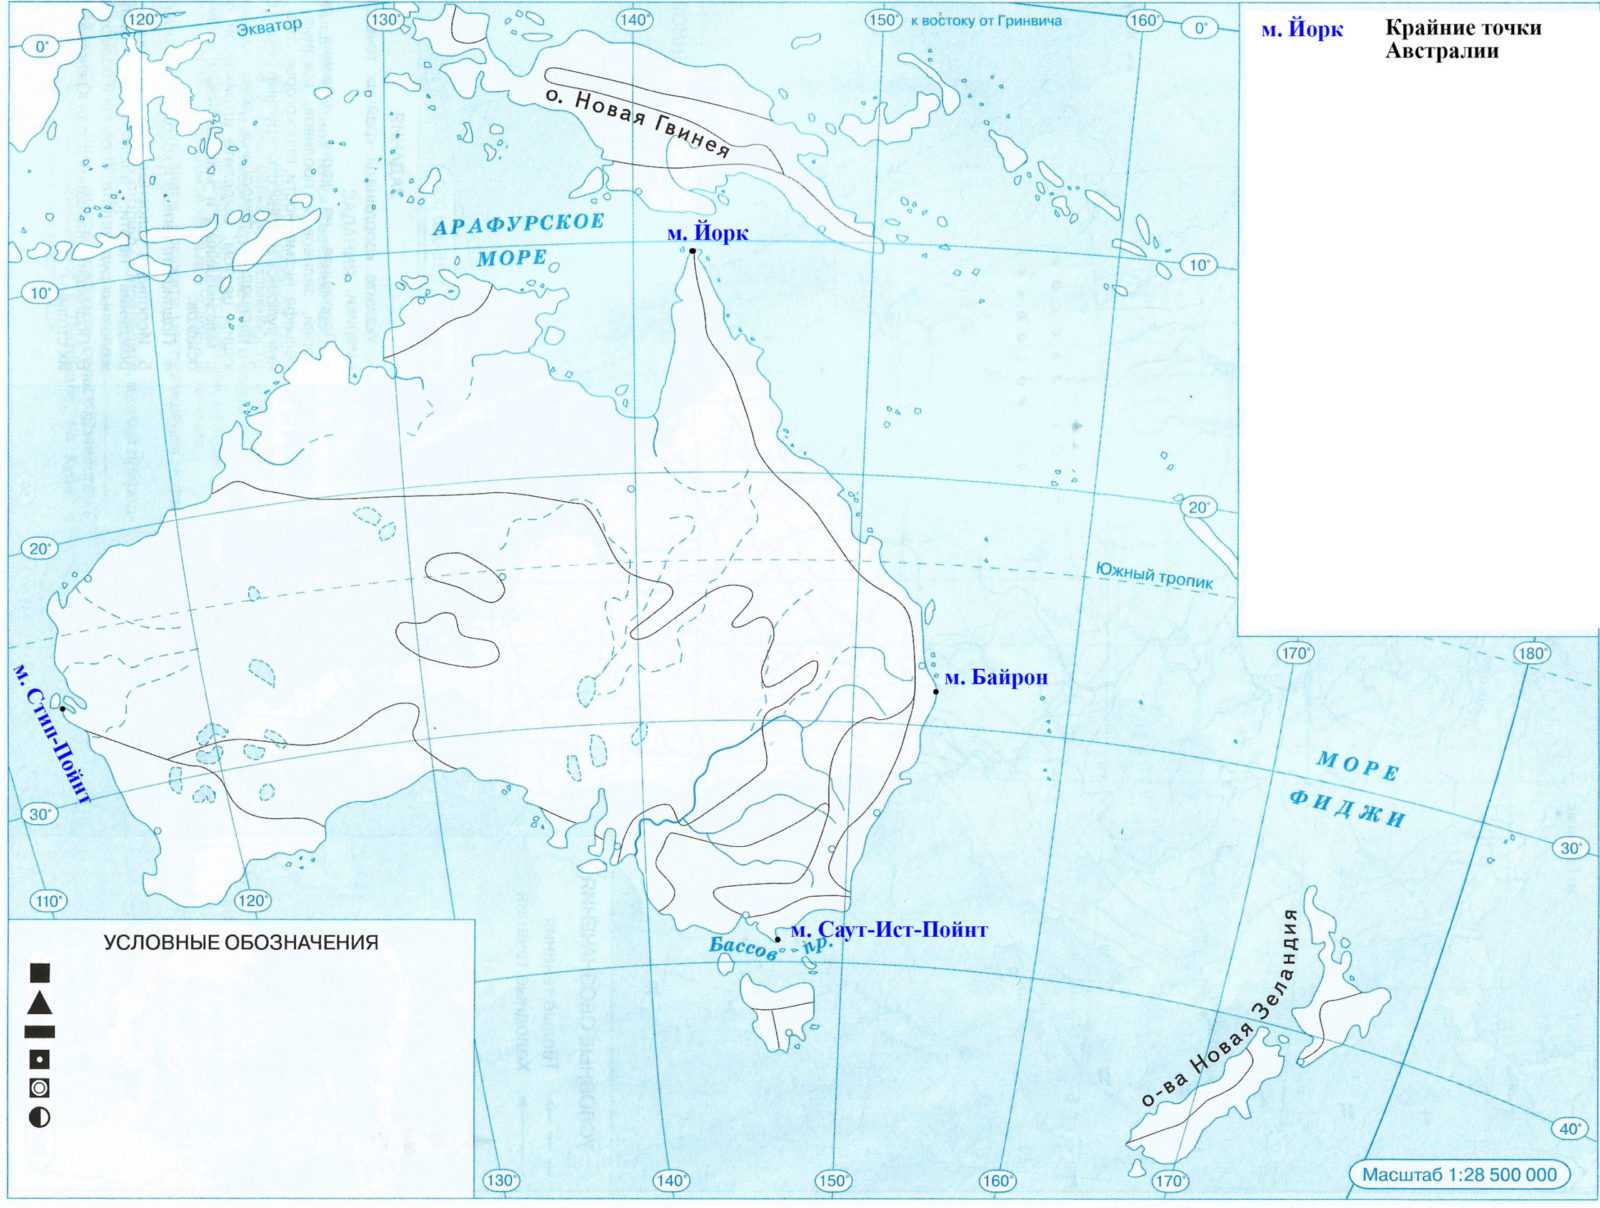 Заливы и проливы северной америки - названия, характеристика и карта